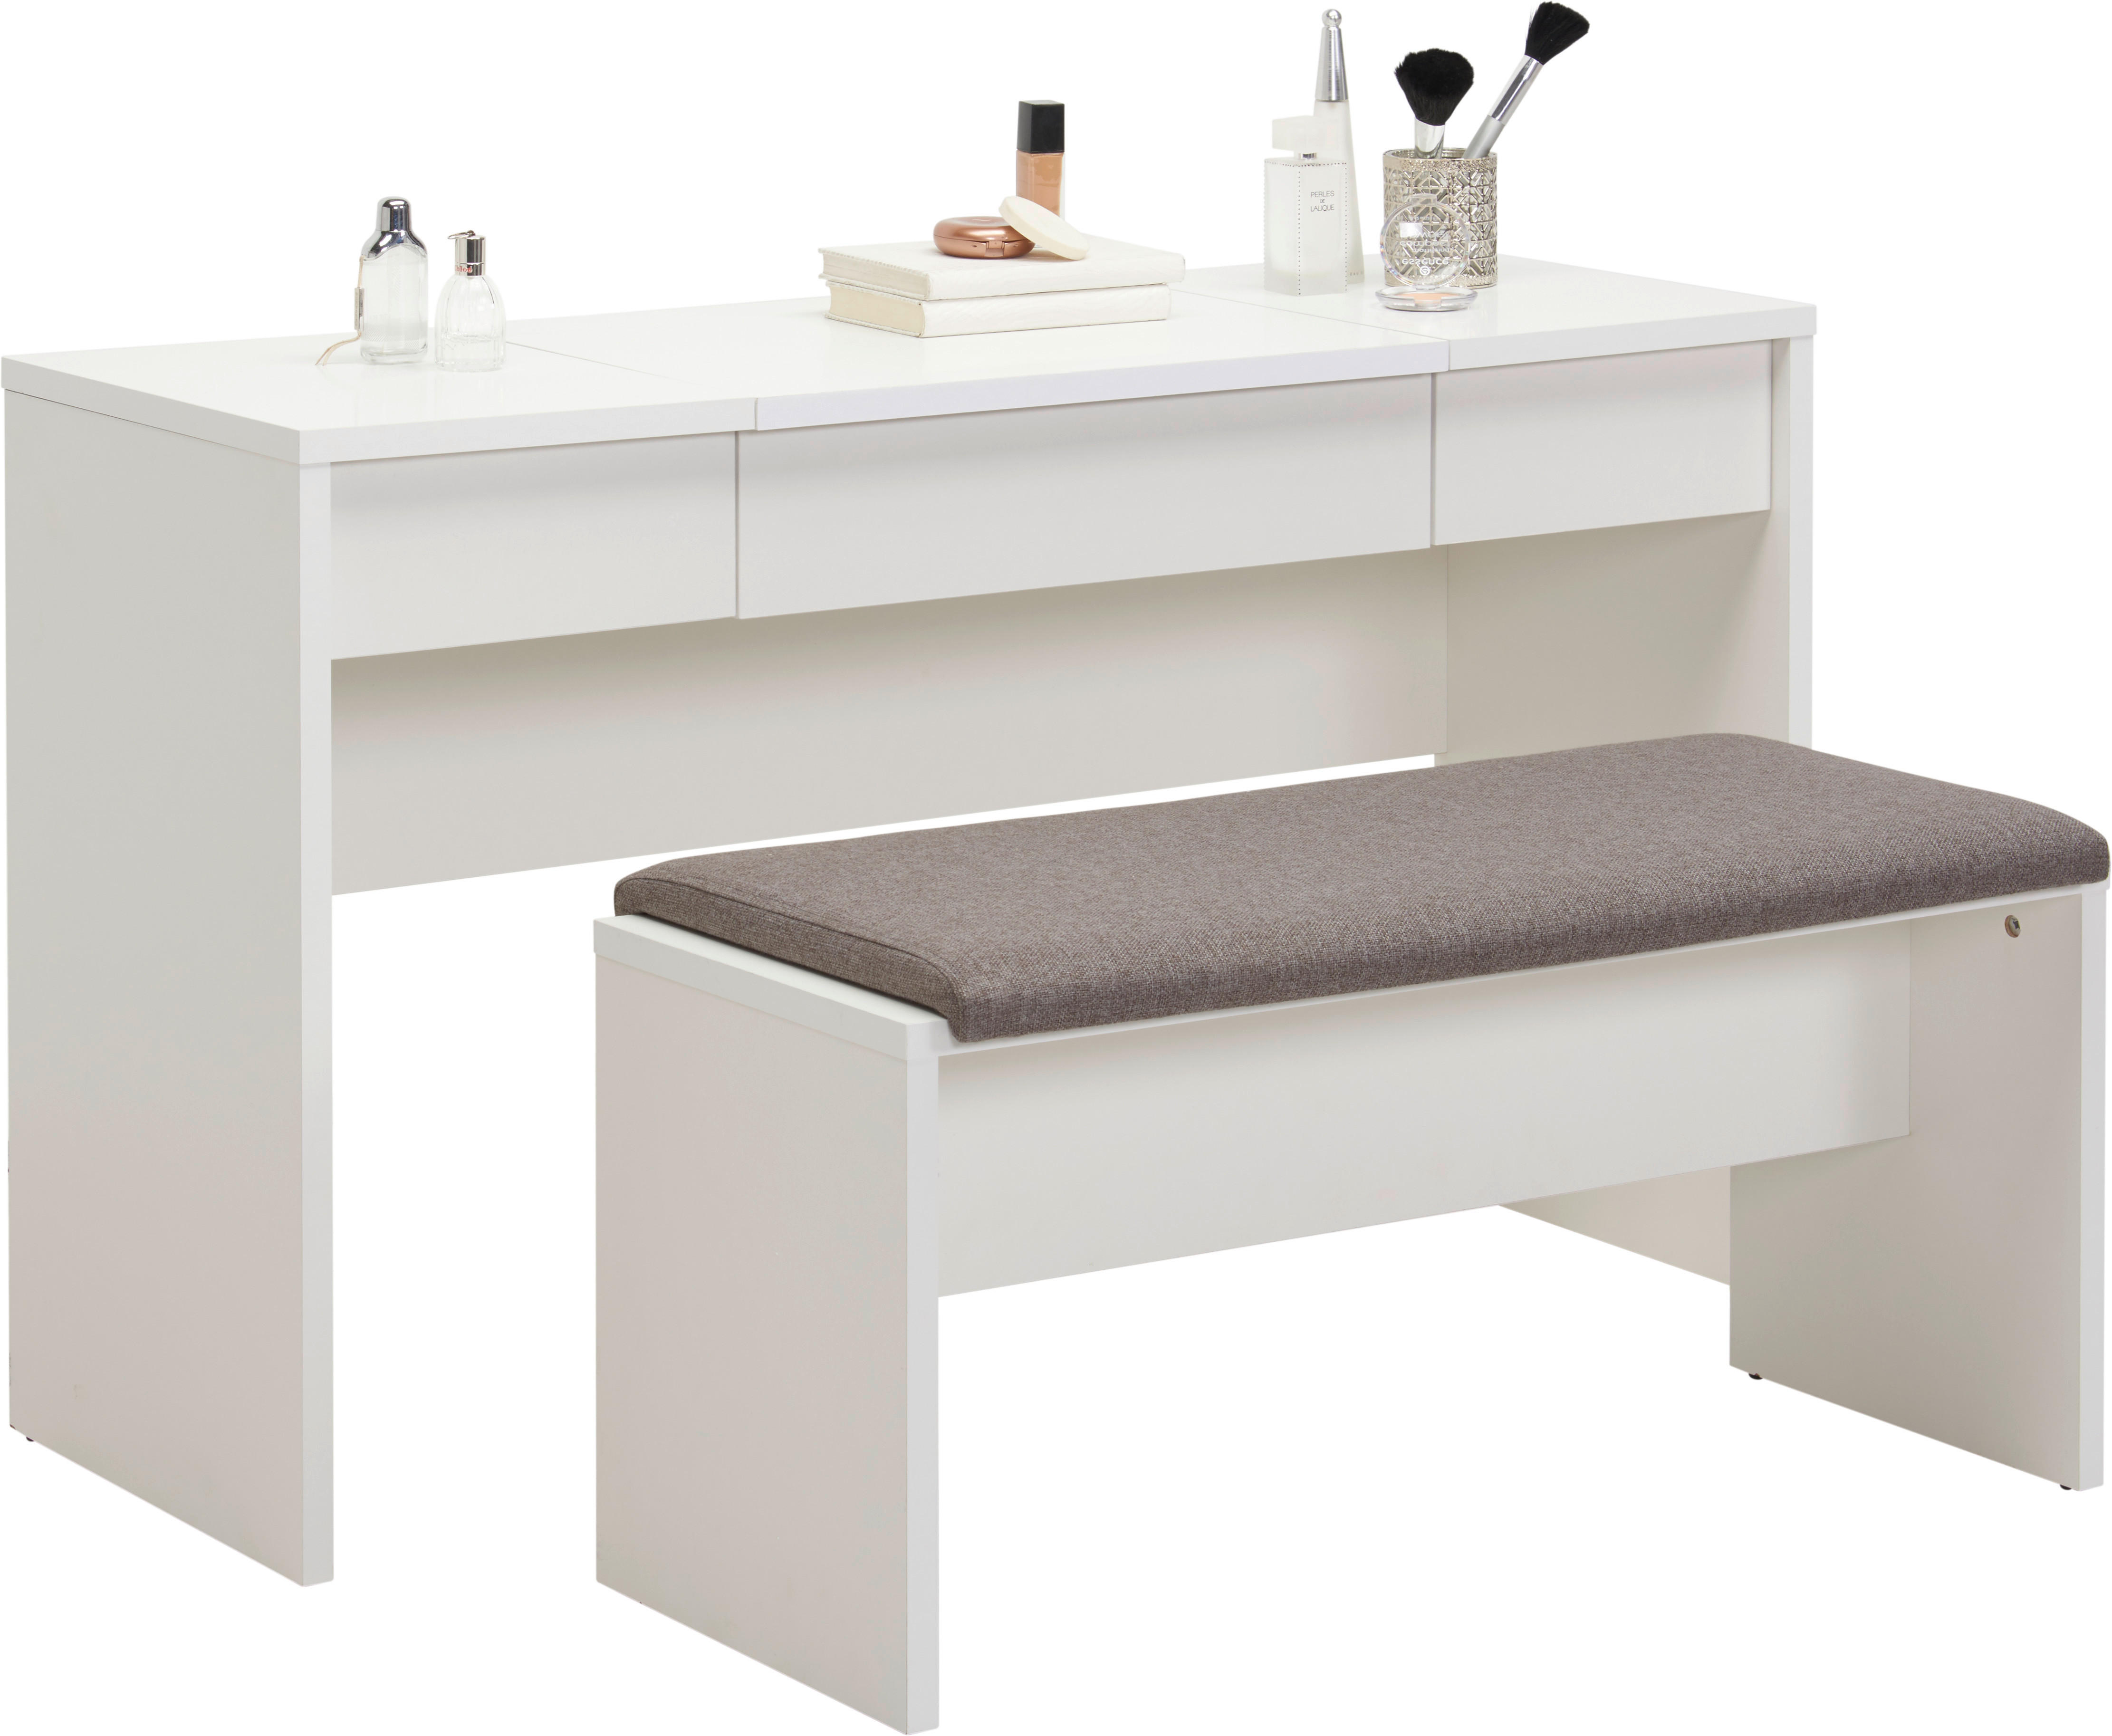 SCHMINKTISCH Grau, Weiß  - Weiß/Grau, Design, Holzwerkstoff/Textil (125/42/81cm) - Carryhome